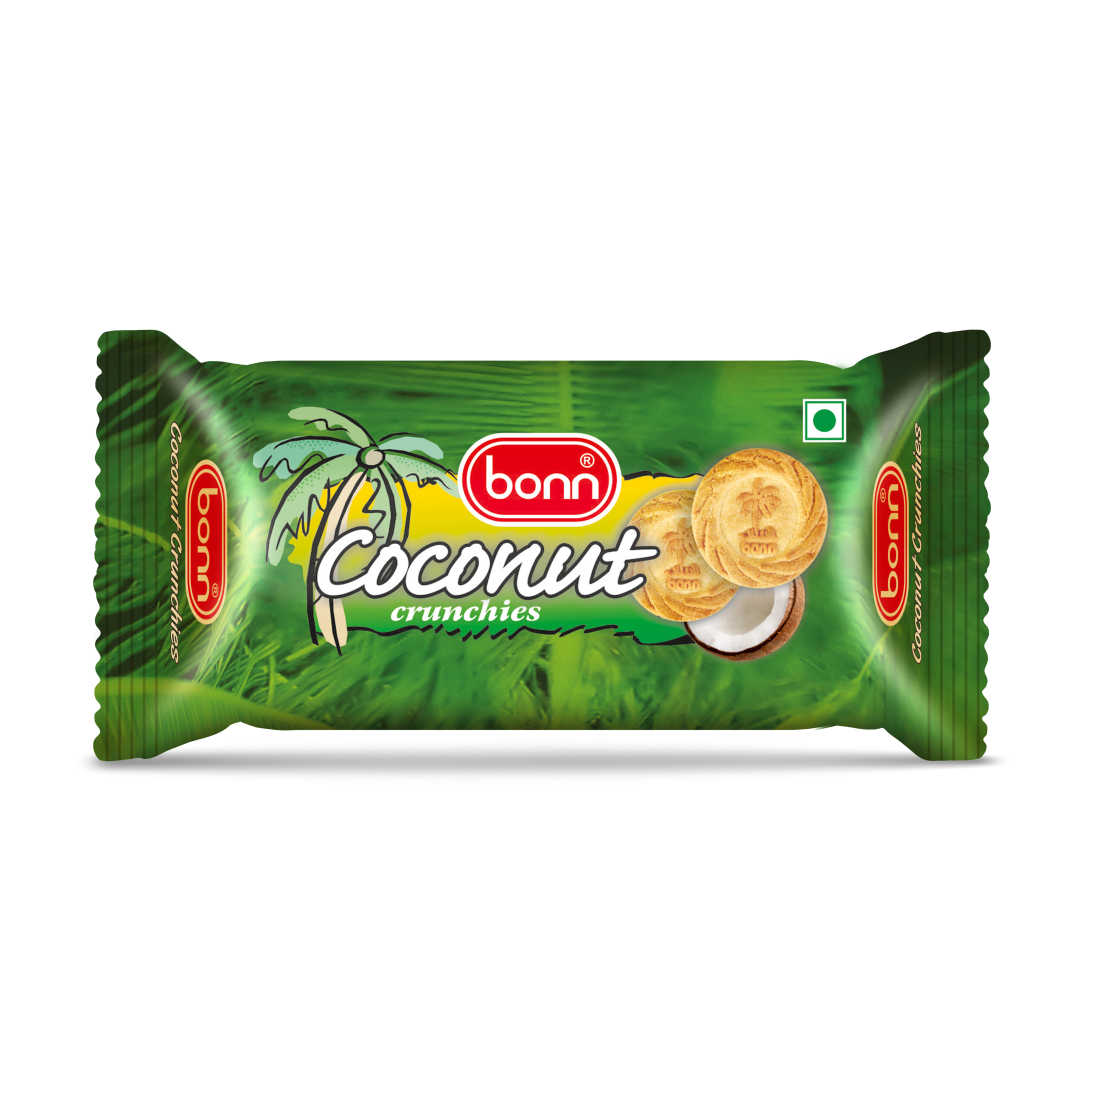 Bonn Coconut crunchies Biscuits